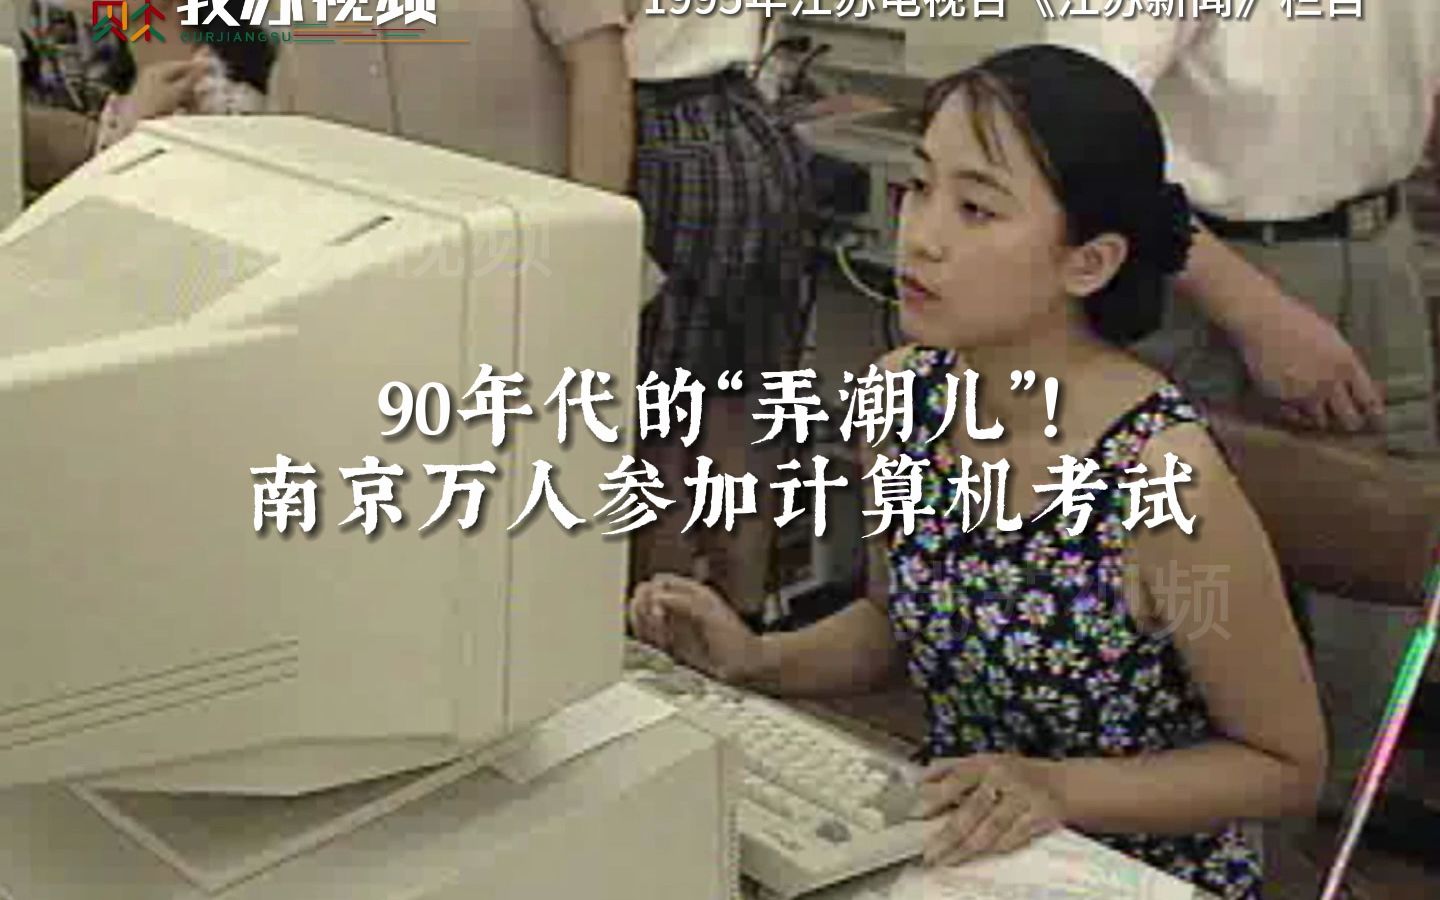 最早的互联网“弄潮儿”！1995年南京万人参加计算机考试。你是从什么时候开始接触